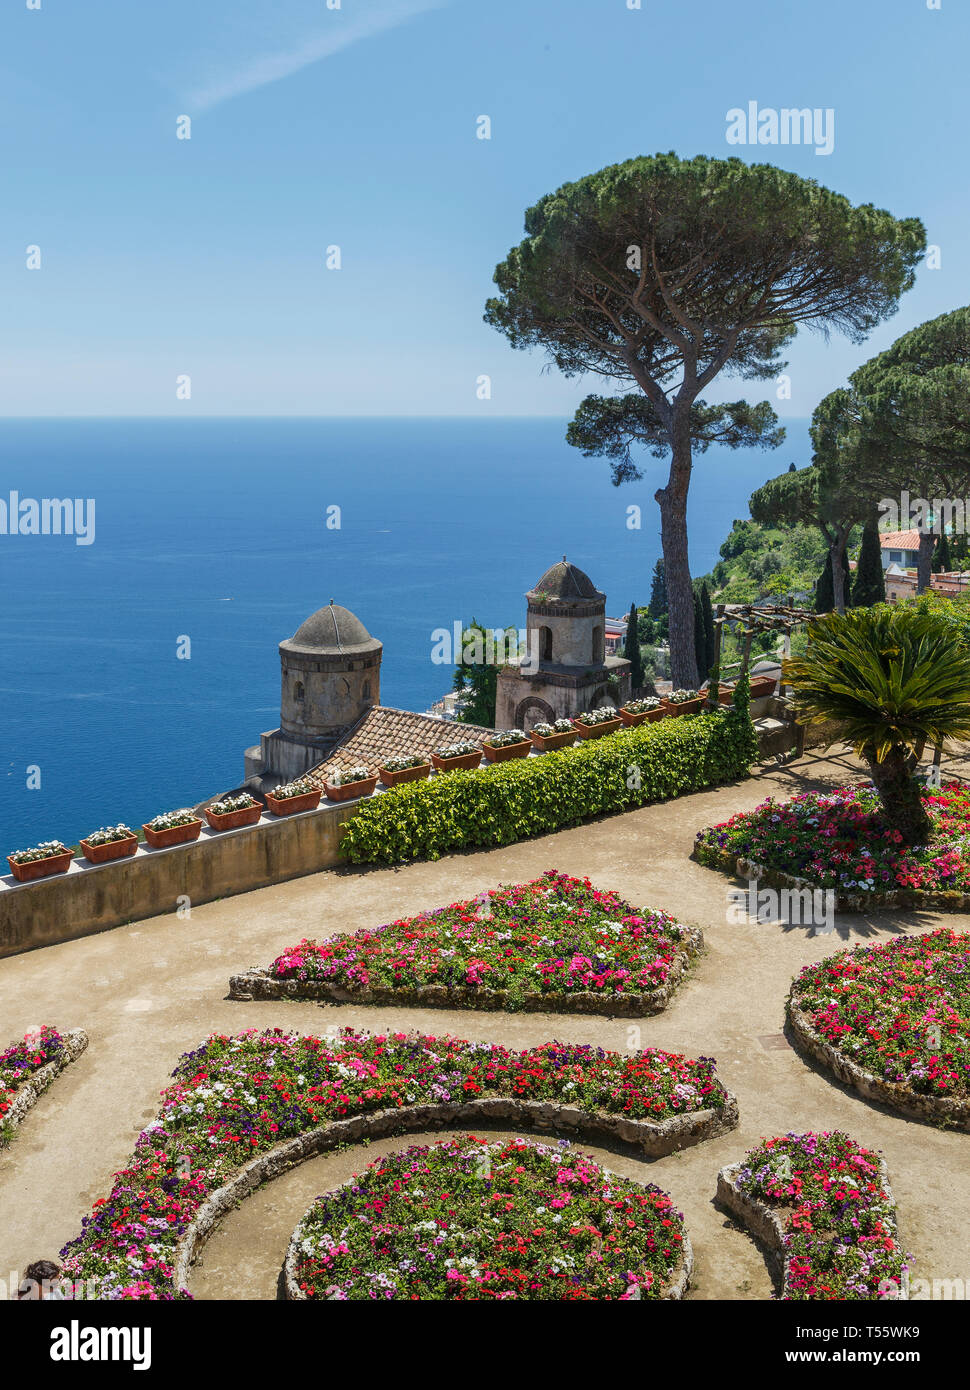 Garden of Villa Rufolo in Ravello, Amalfi Coast, Italy Stock Photo